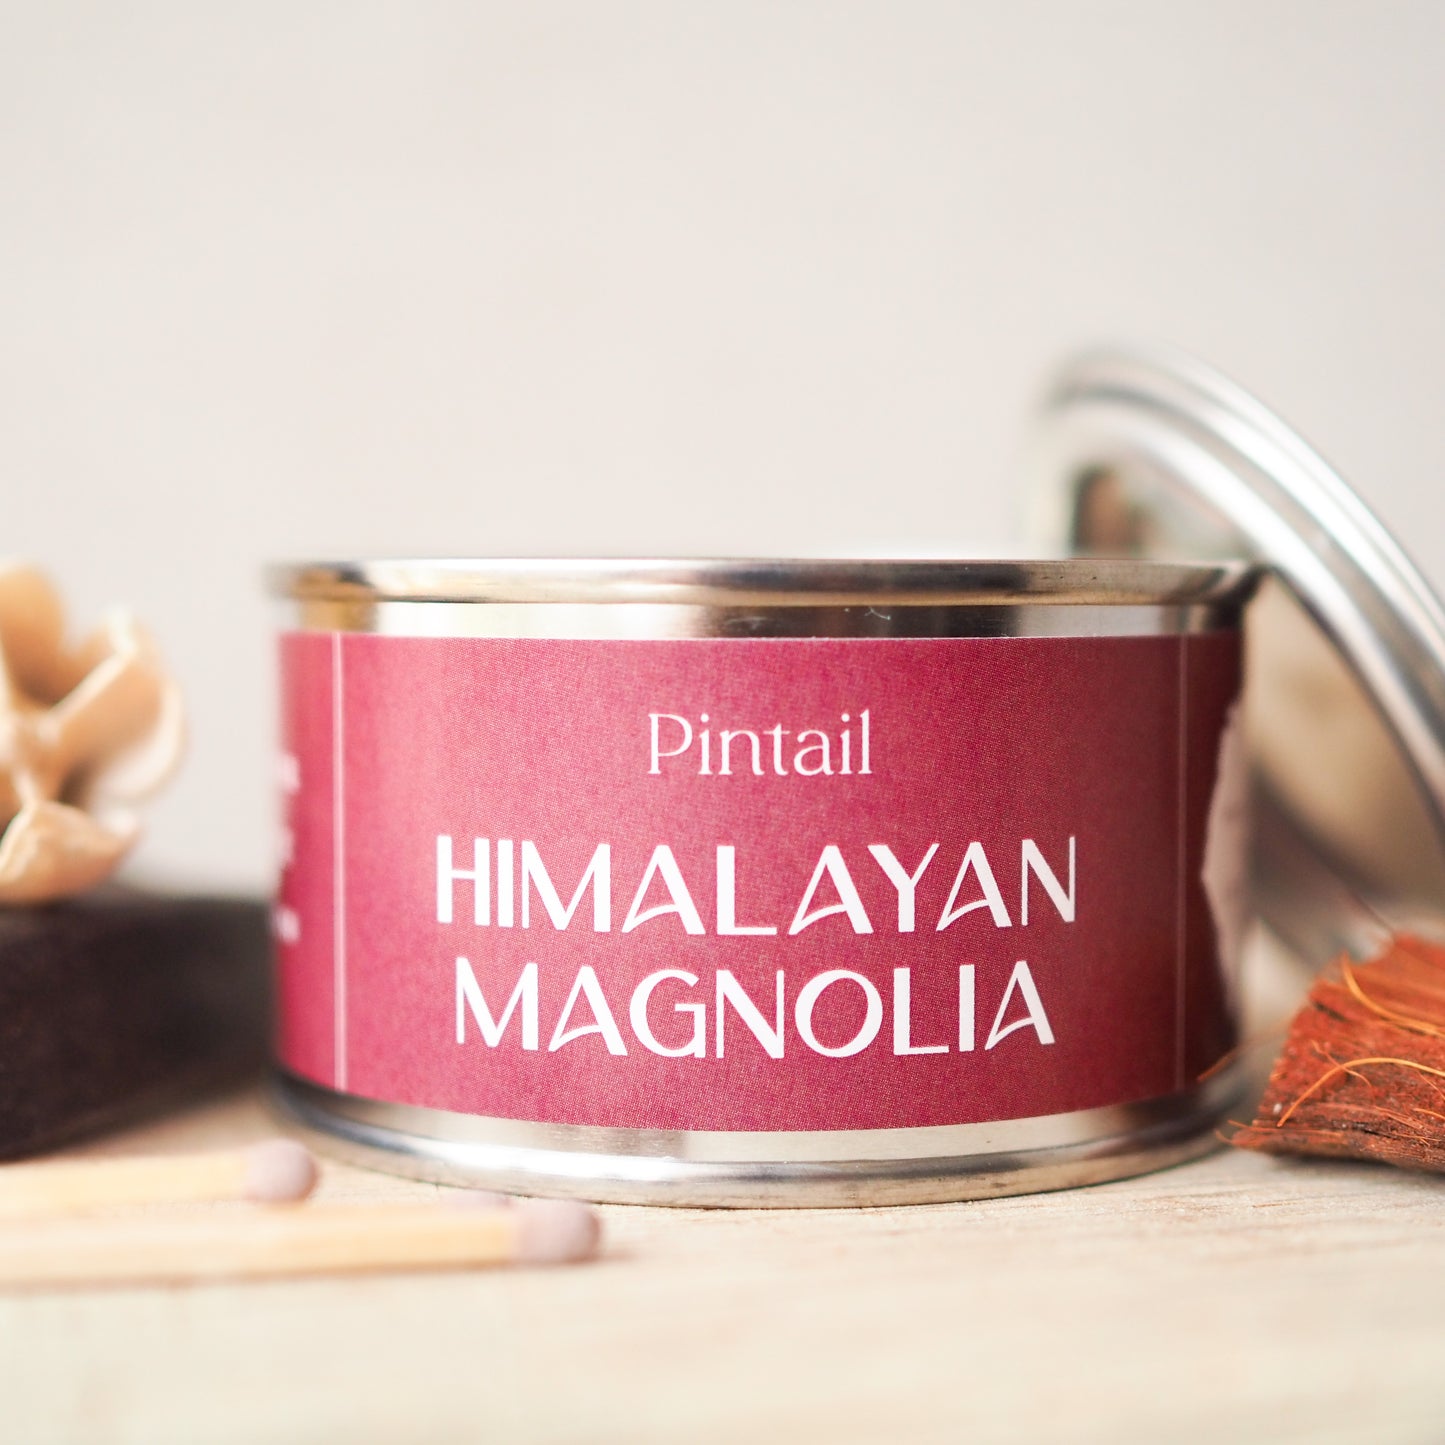 Himalayan Magnolia Paint Pot